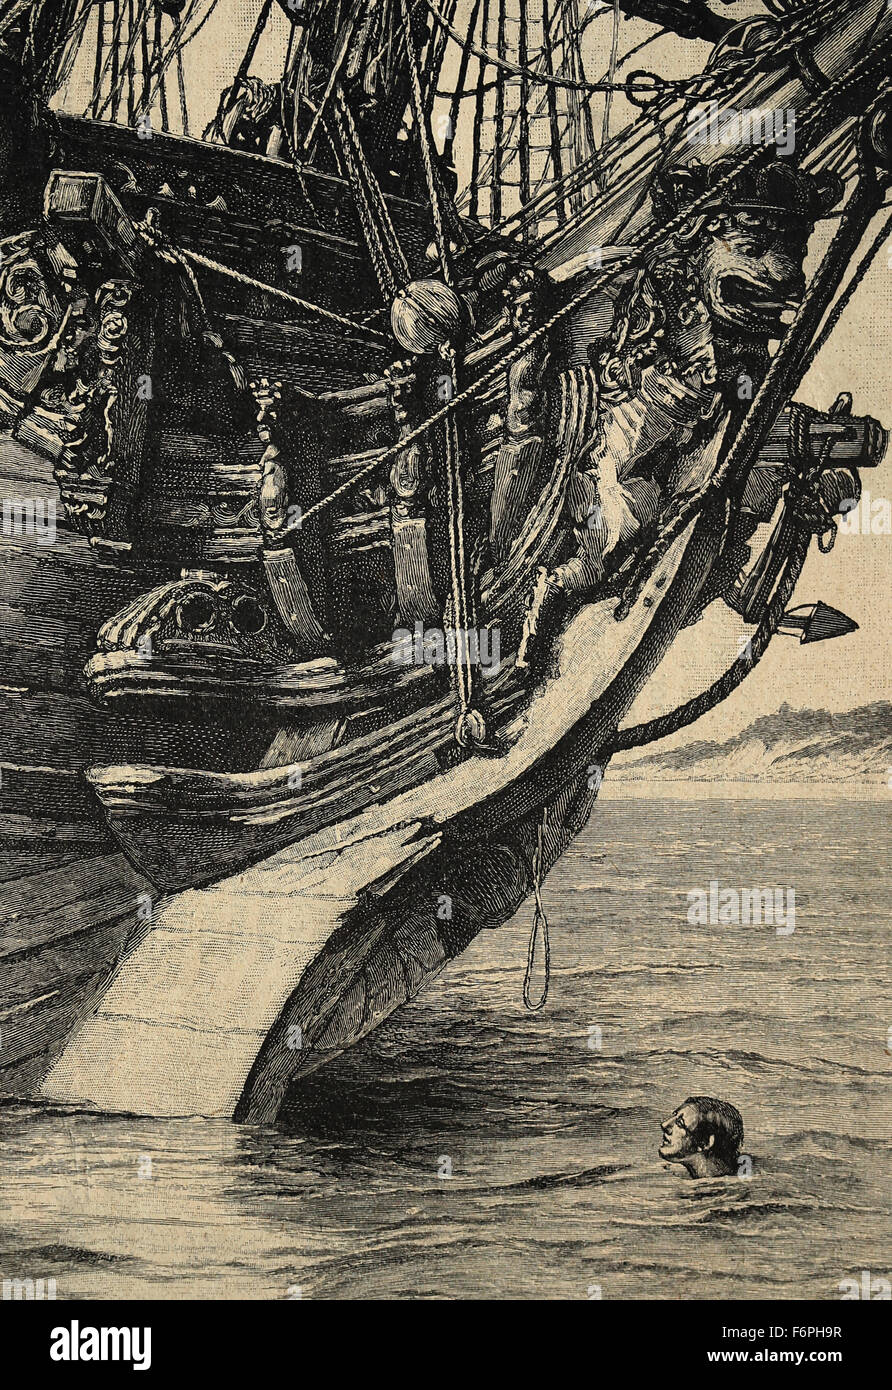 Robinson Crusoe. Roman von Daniel Defoe, veröffentlicht, 1719. "Ich erblickte ein kleines Stück Seil". Illustriert von Walter Paget. Stockfoto